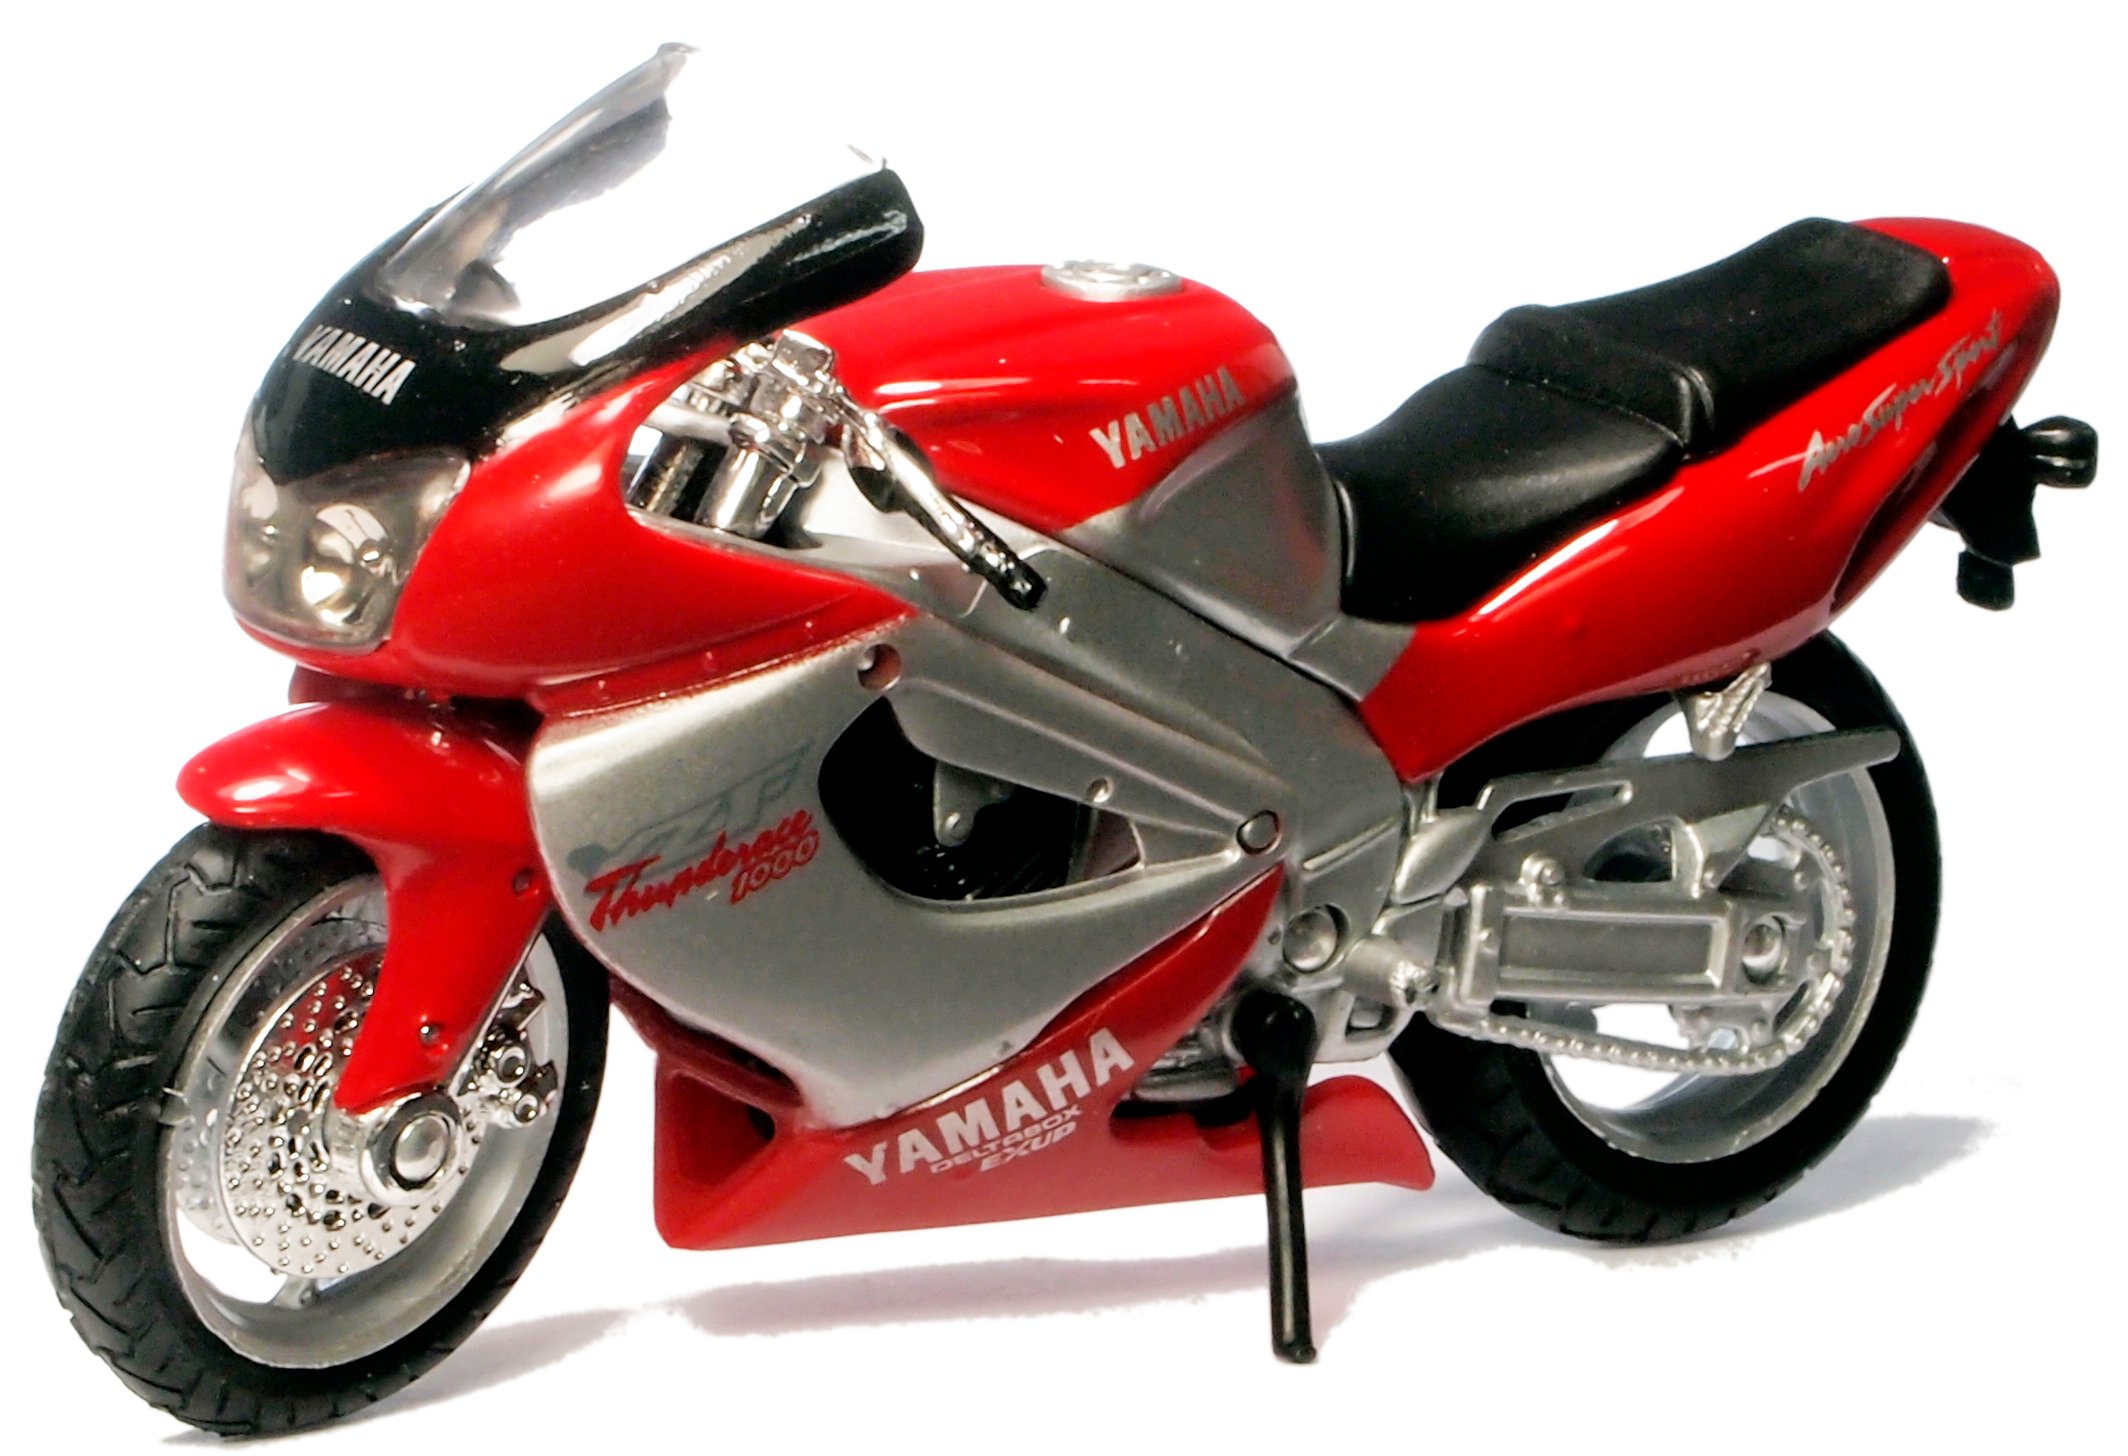 MOTOCYKL MOTOR YAMAHA YZF THUNDERACE ŚCIGACZ WELLY